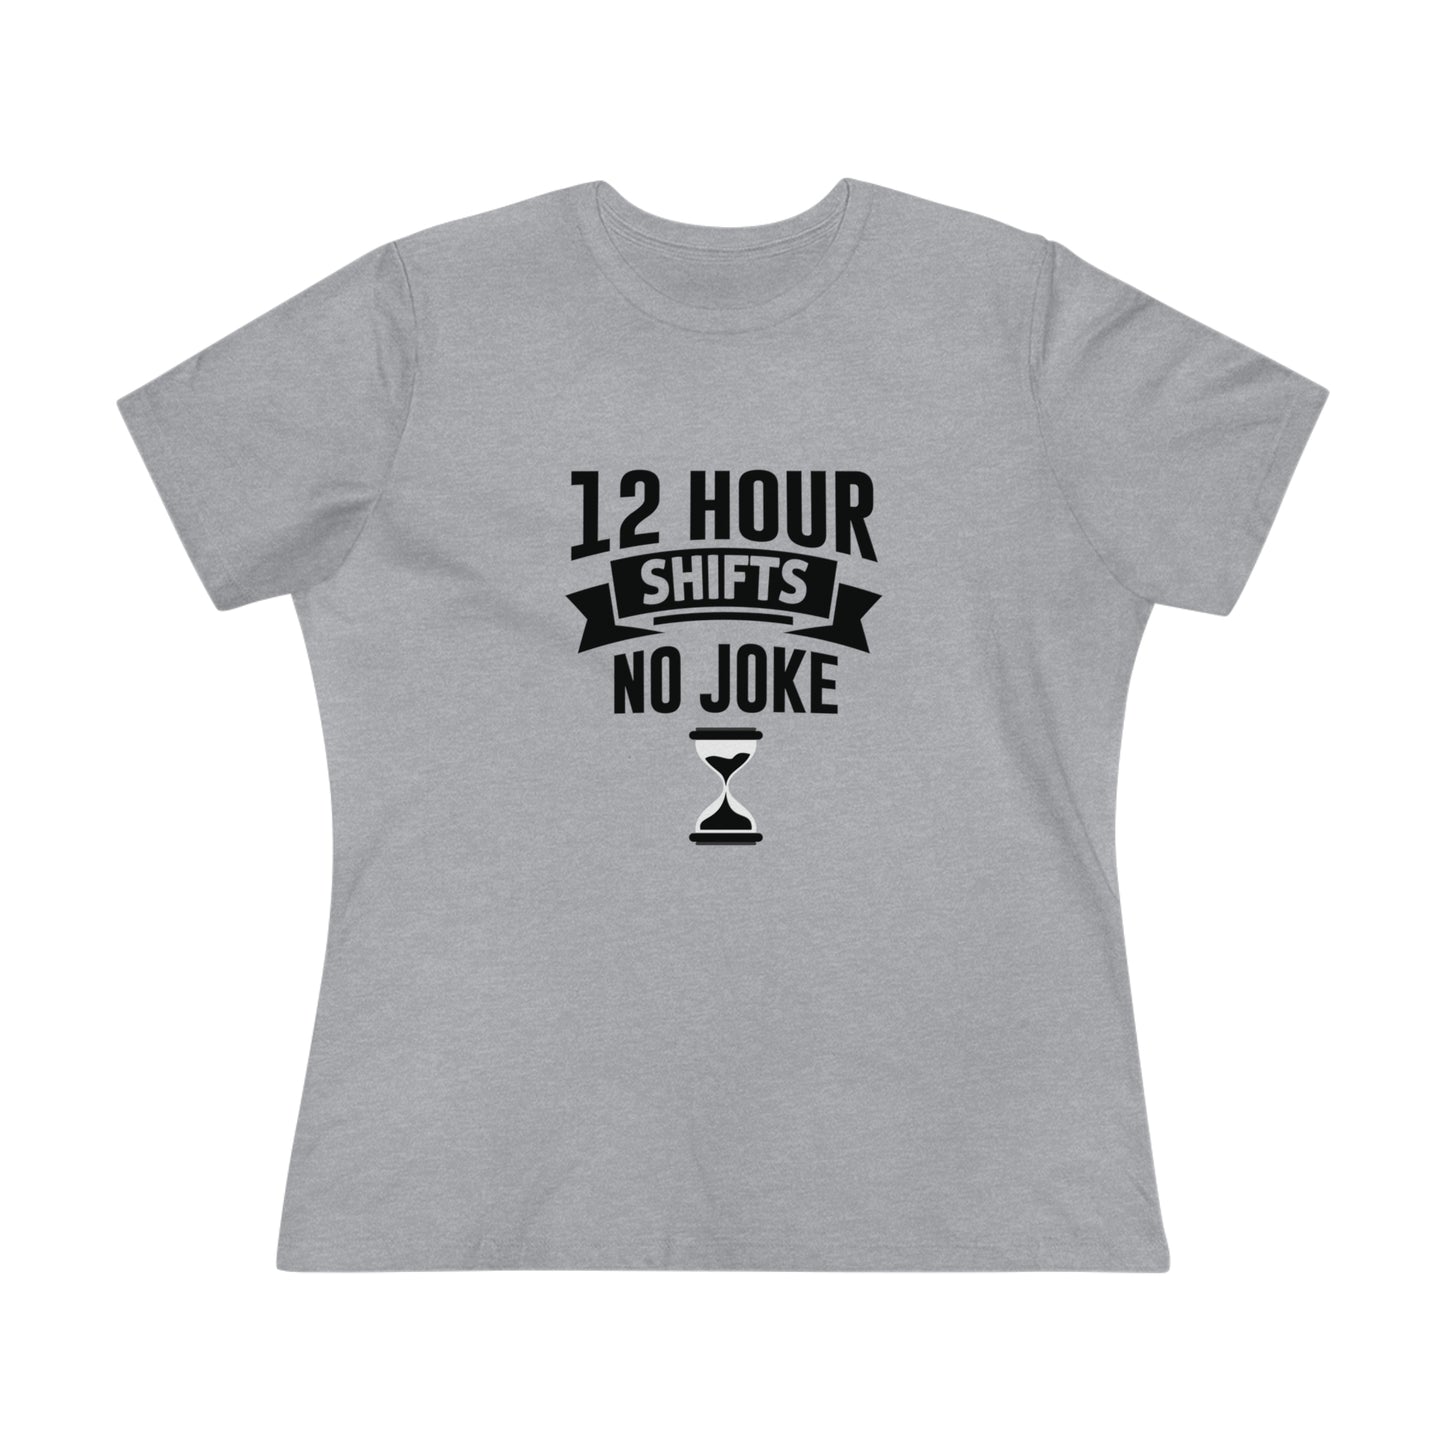 12 Hour Shifts No Joke Women's Premium Tee, Doctor shirts, Doctor gift ideas, New Doctor shirt, doctors gift, women shirt with doctor design